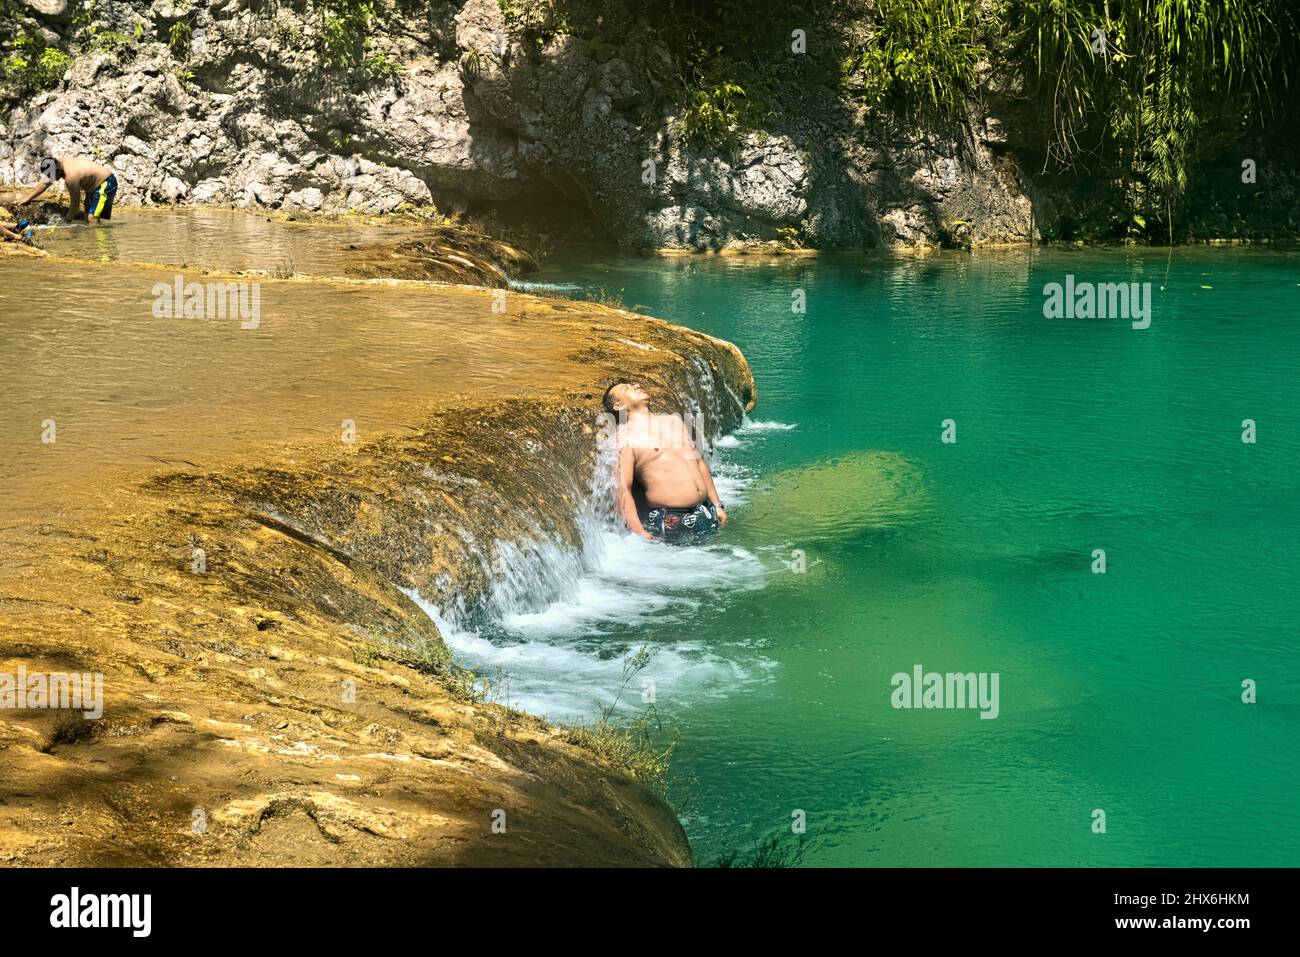 Los turistas disfrutan de las hermosas piscinas de Semuc Champey, Río Cabohon, Lanquin, Alta Verapaz, Guatemala Foto de stock